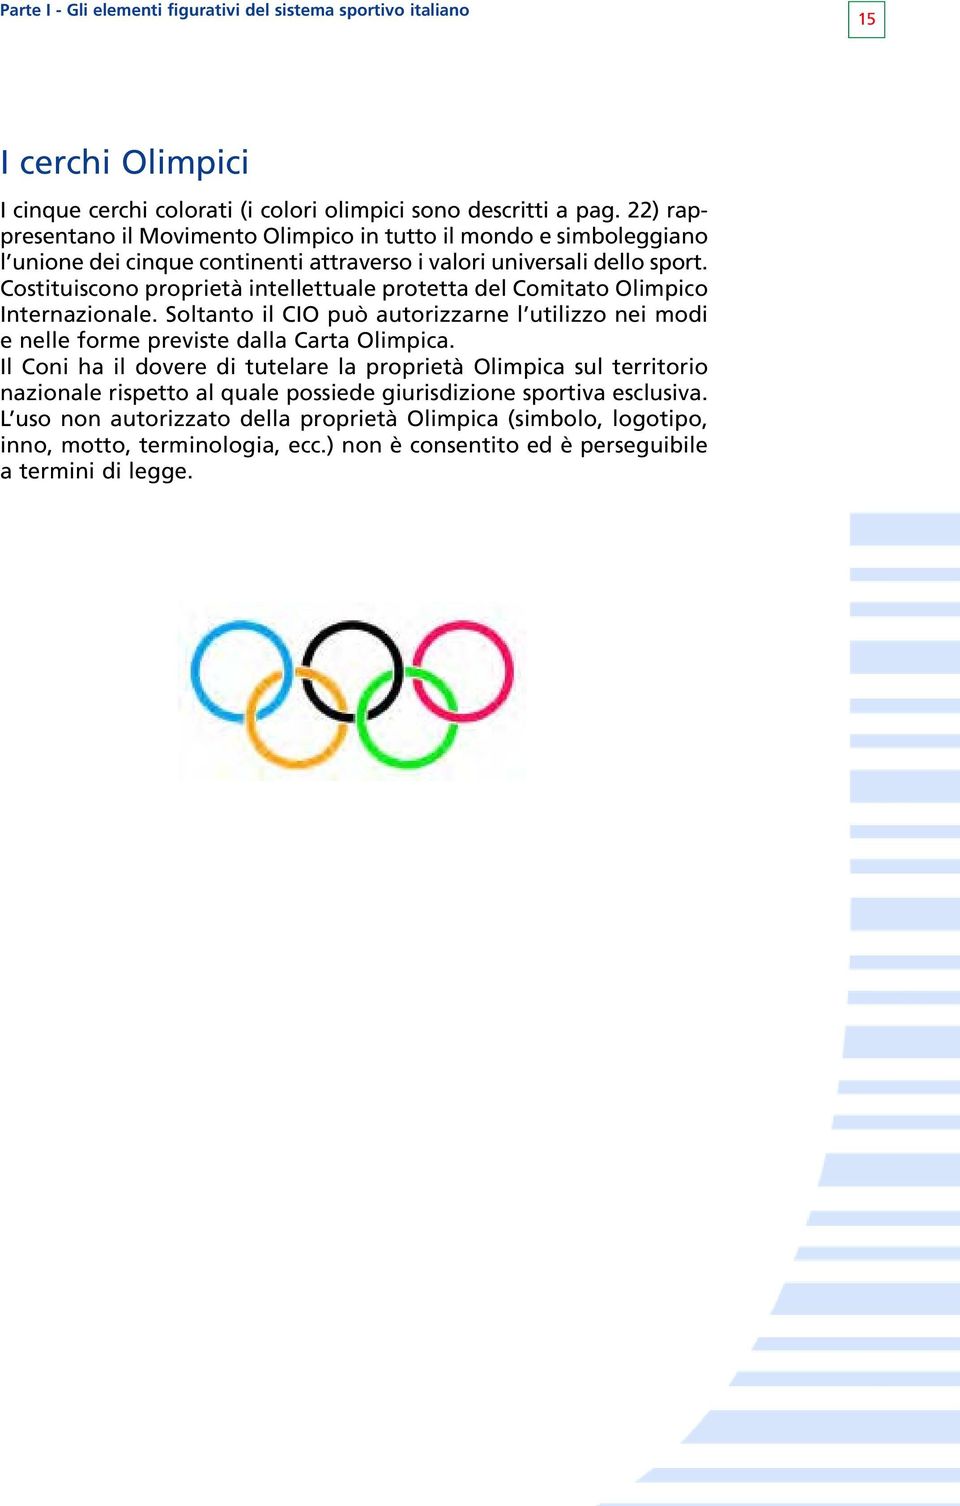 Costituiscono proprietà intellettuale protetta del Comitato Olimpico Internazionale. Soltanto il CIO può autorizzarne l utilizzo nei modi e nelle forme previste dalla Carta Olimpica.